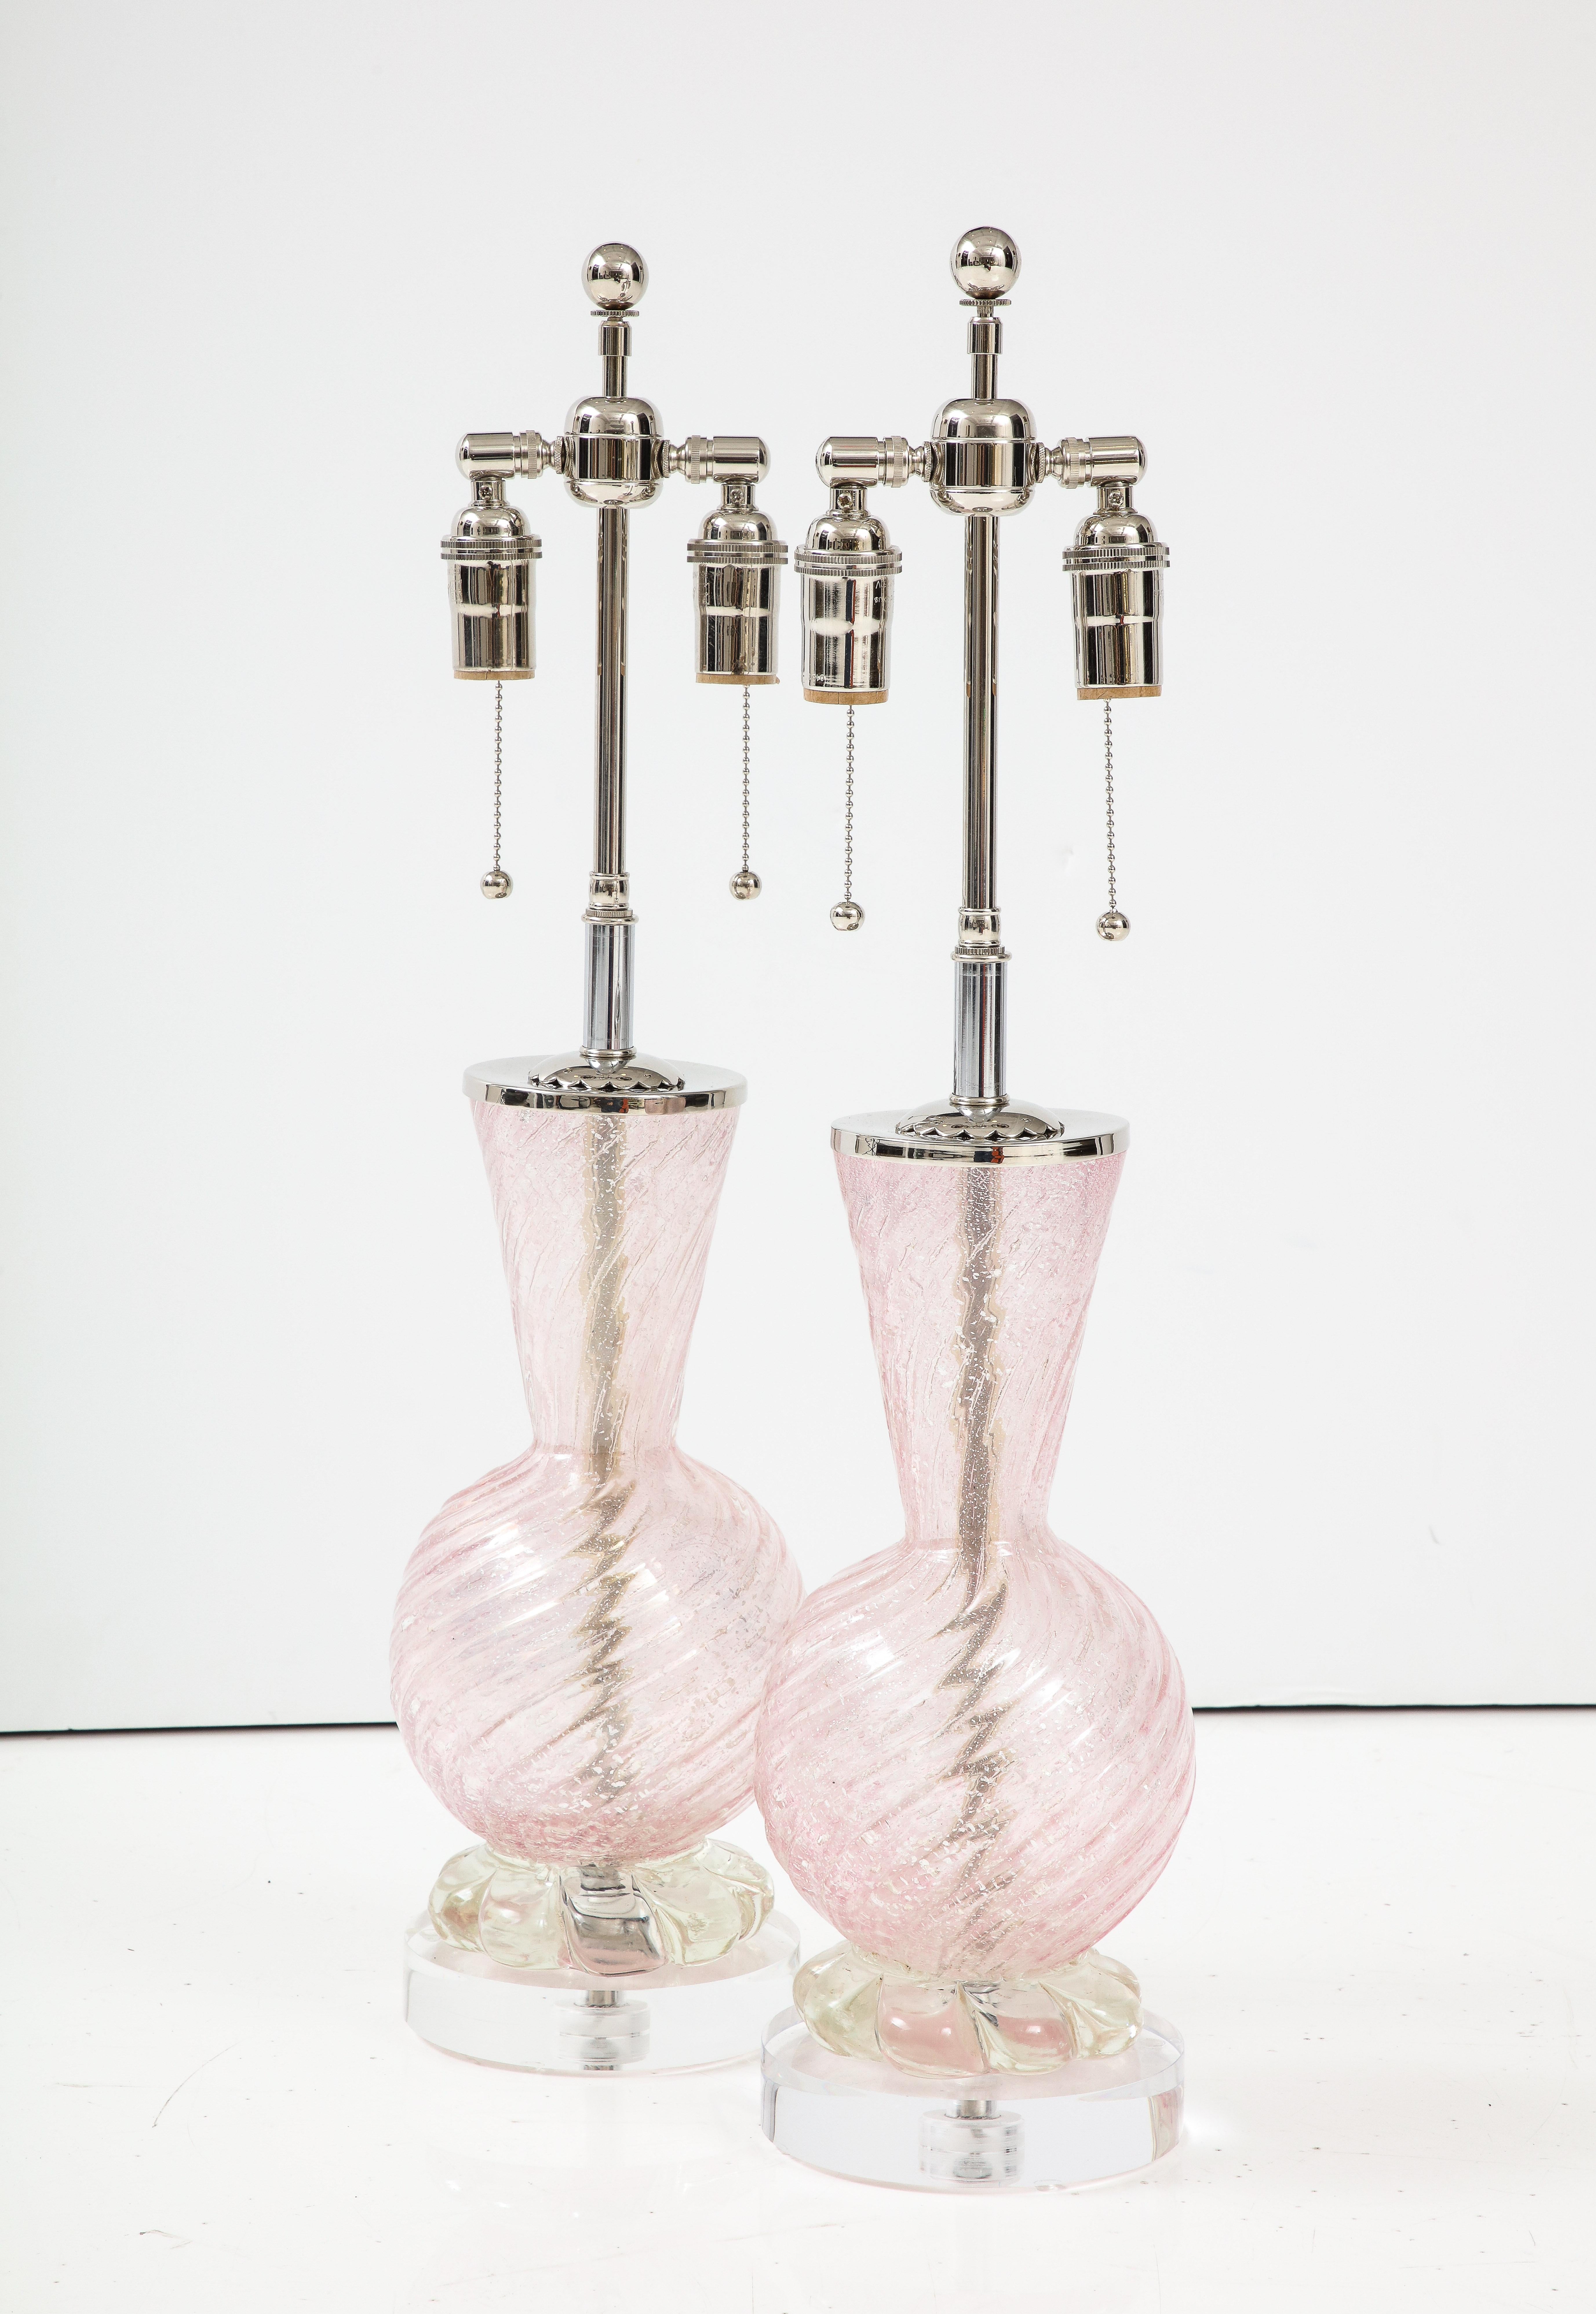 Paire de lampes en verre Murano rose pâle avec des inclusions de poussière d'argent.
Les lampes reposent sur d'épais socles en lucite et ont été nouvellement recâblées avec des câbles réglables.
doubles grappes en nickel poli qui acceptent des